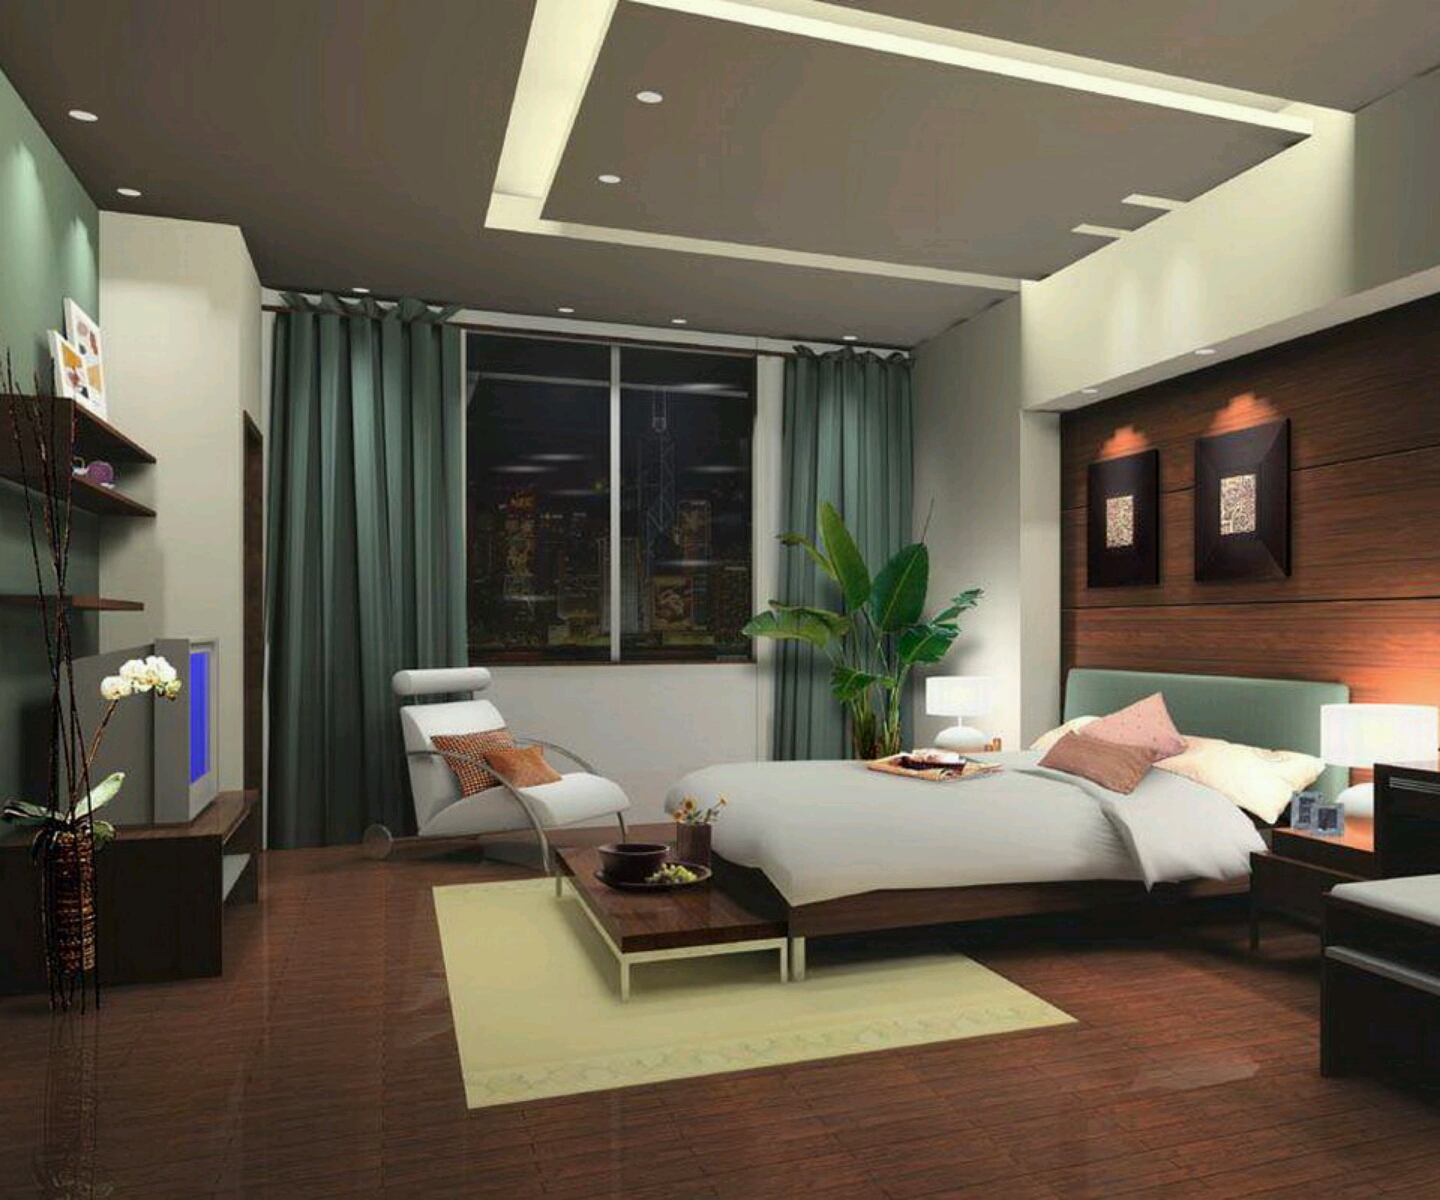 Bedroom Design Bedroom Interior Design Small Modern Ideas My Blog